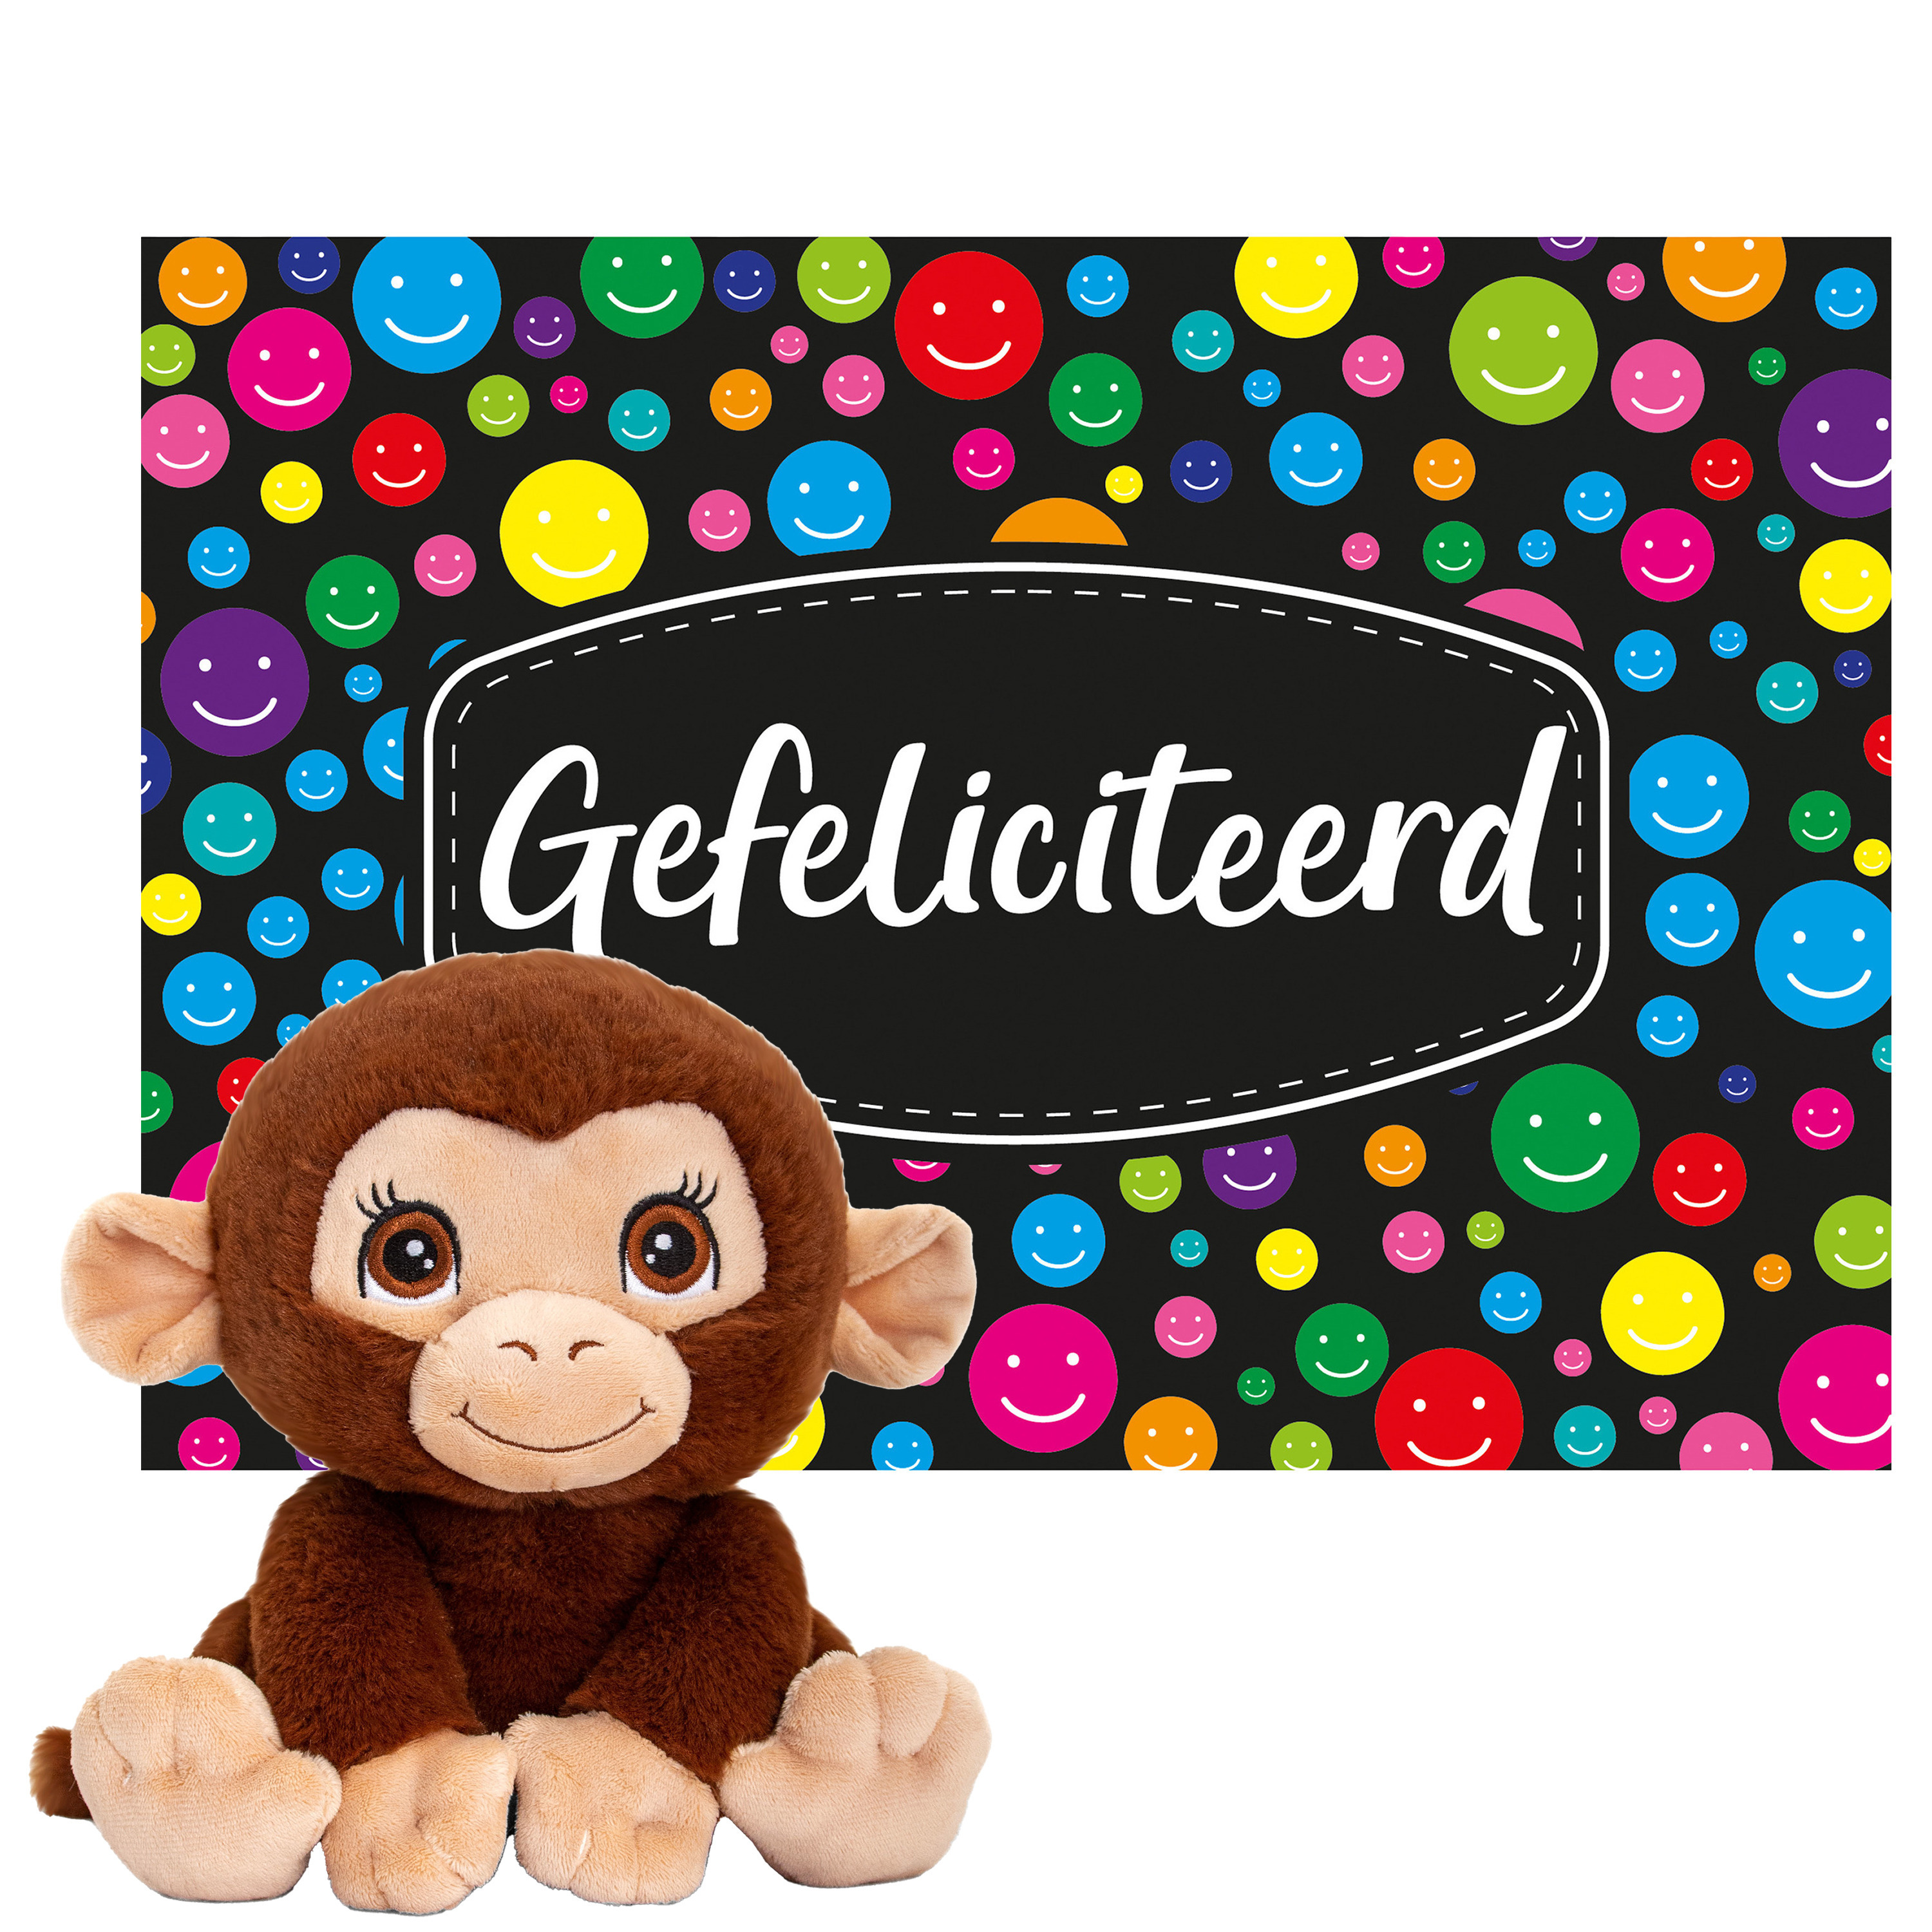 Keel toys Cadeaukaart Gefeliciteerd met knuffeldier chimpansee aap 25 cm